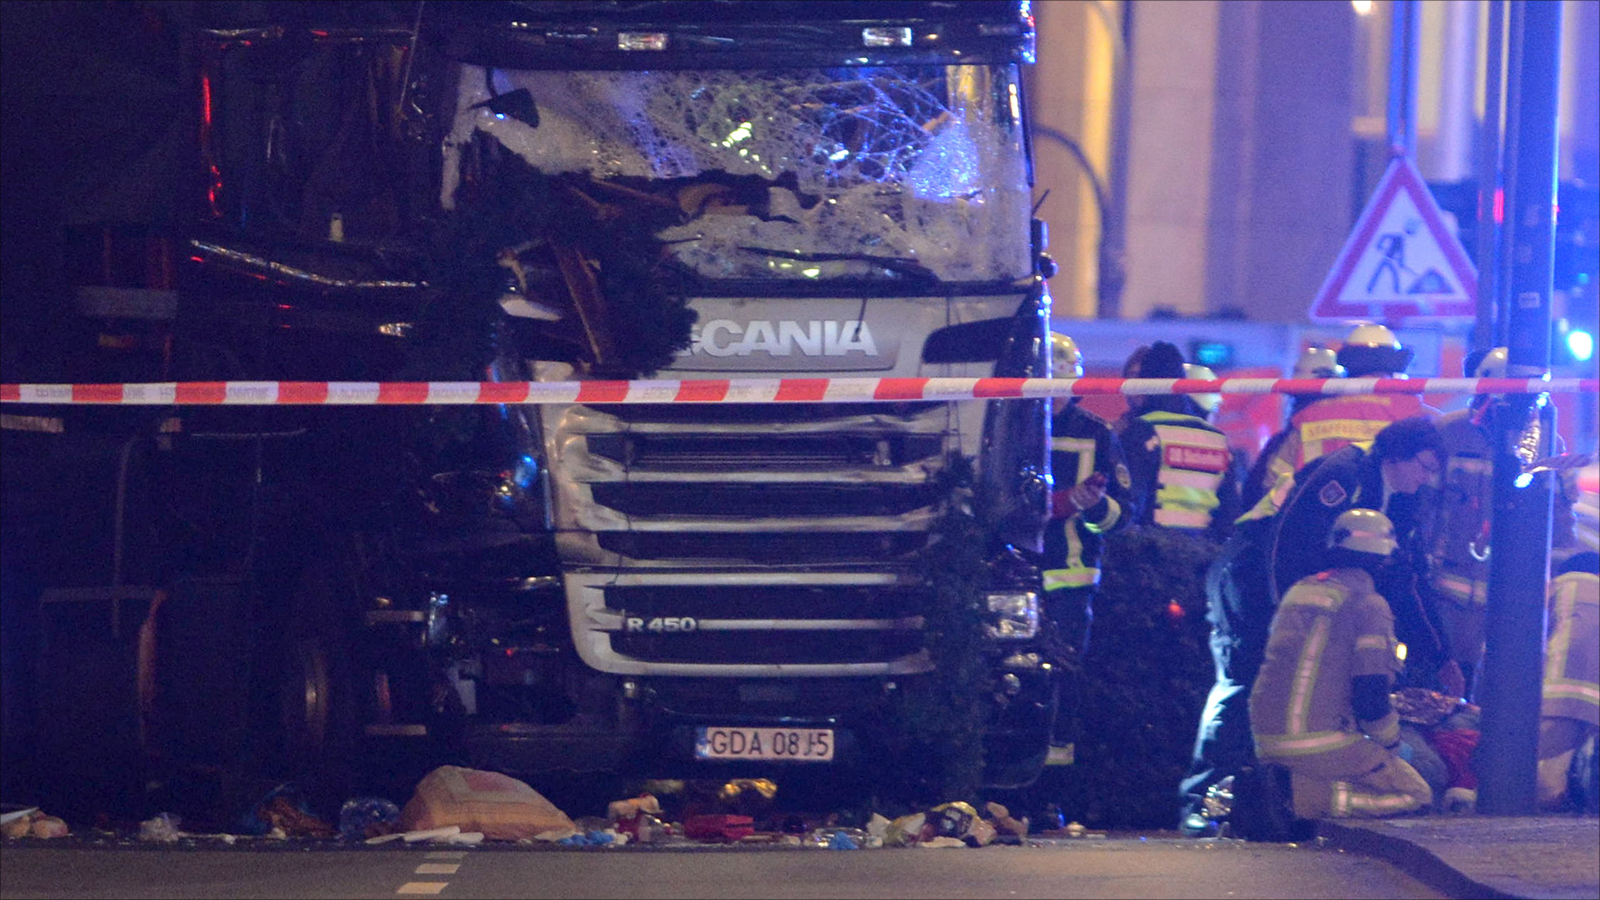 صورة للشاحنة التي اقتحمت السوق في برلين وقتلت وجرحت العشرات (الأوروبية)